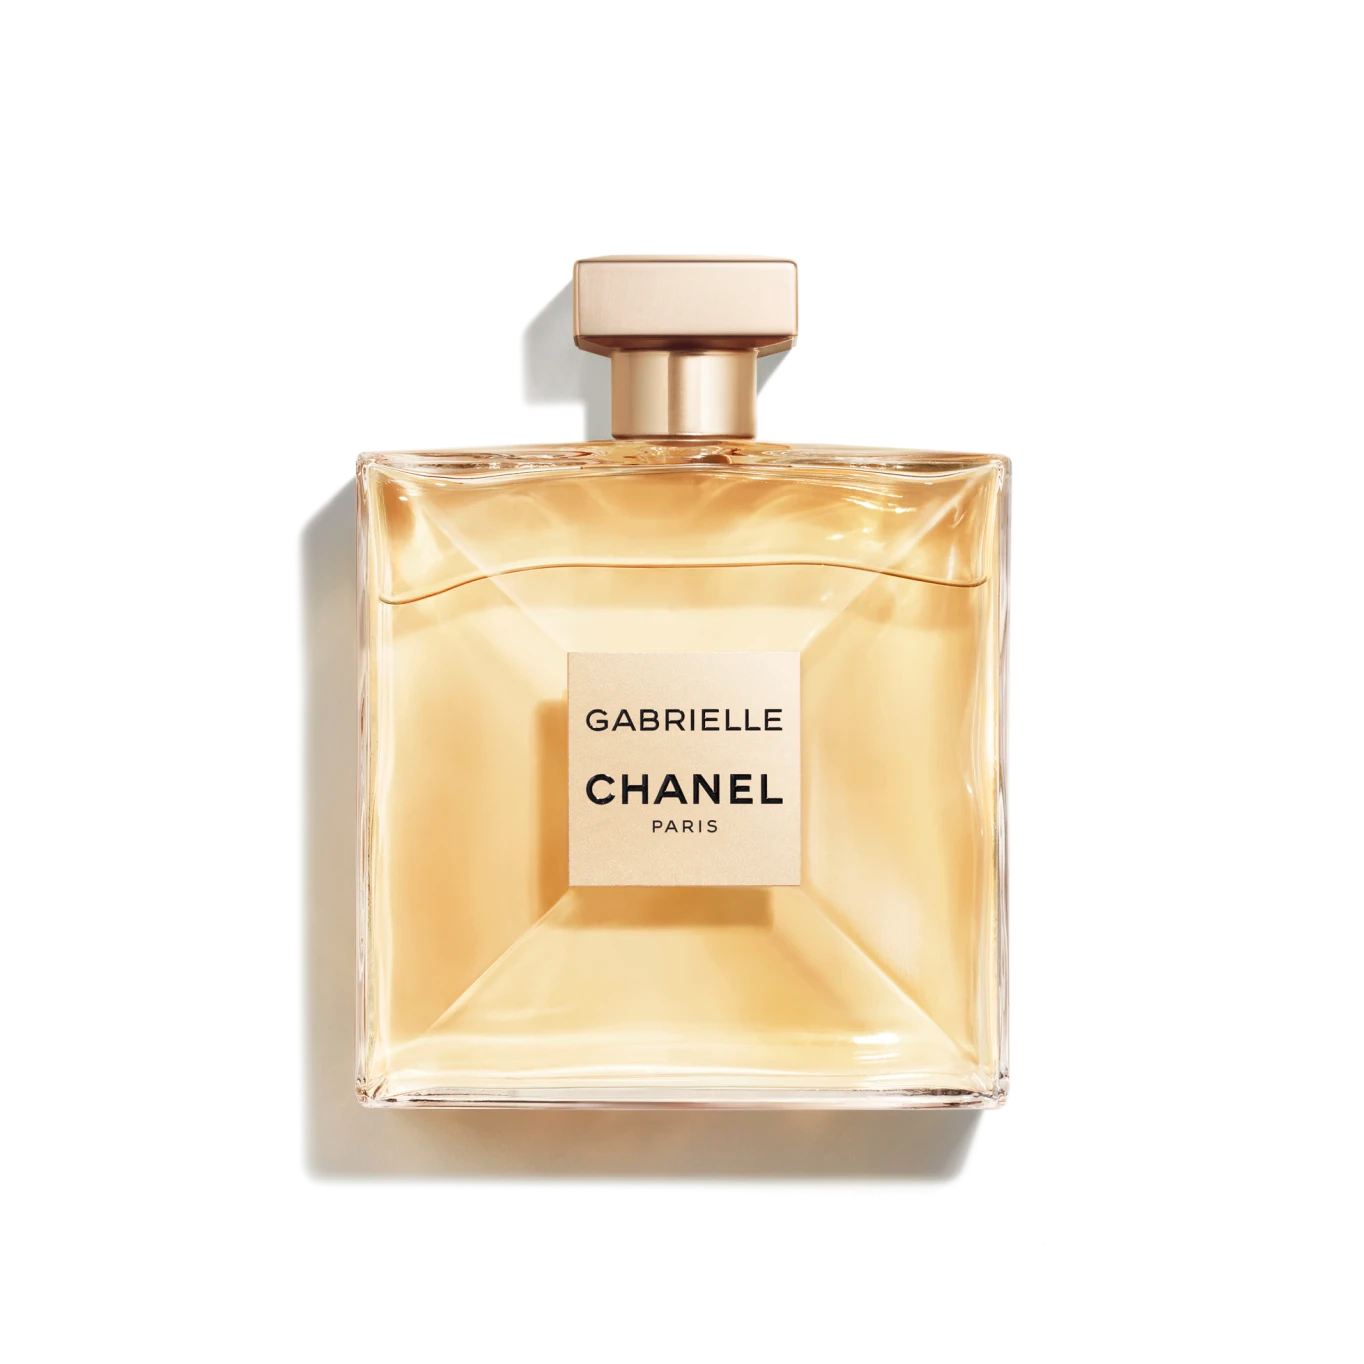 Parfüm Flakon von Chanel Gabrielle Chanel mit roségoldenem Deckel